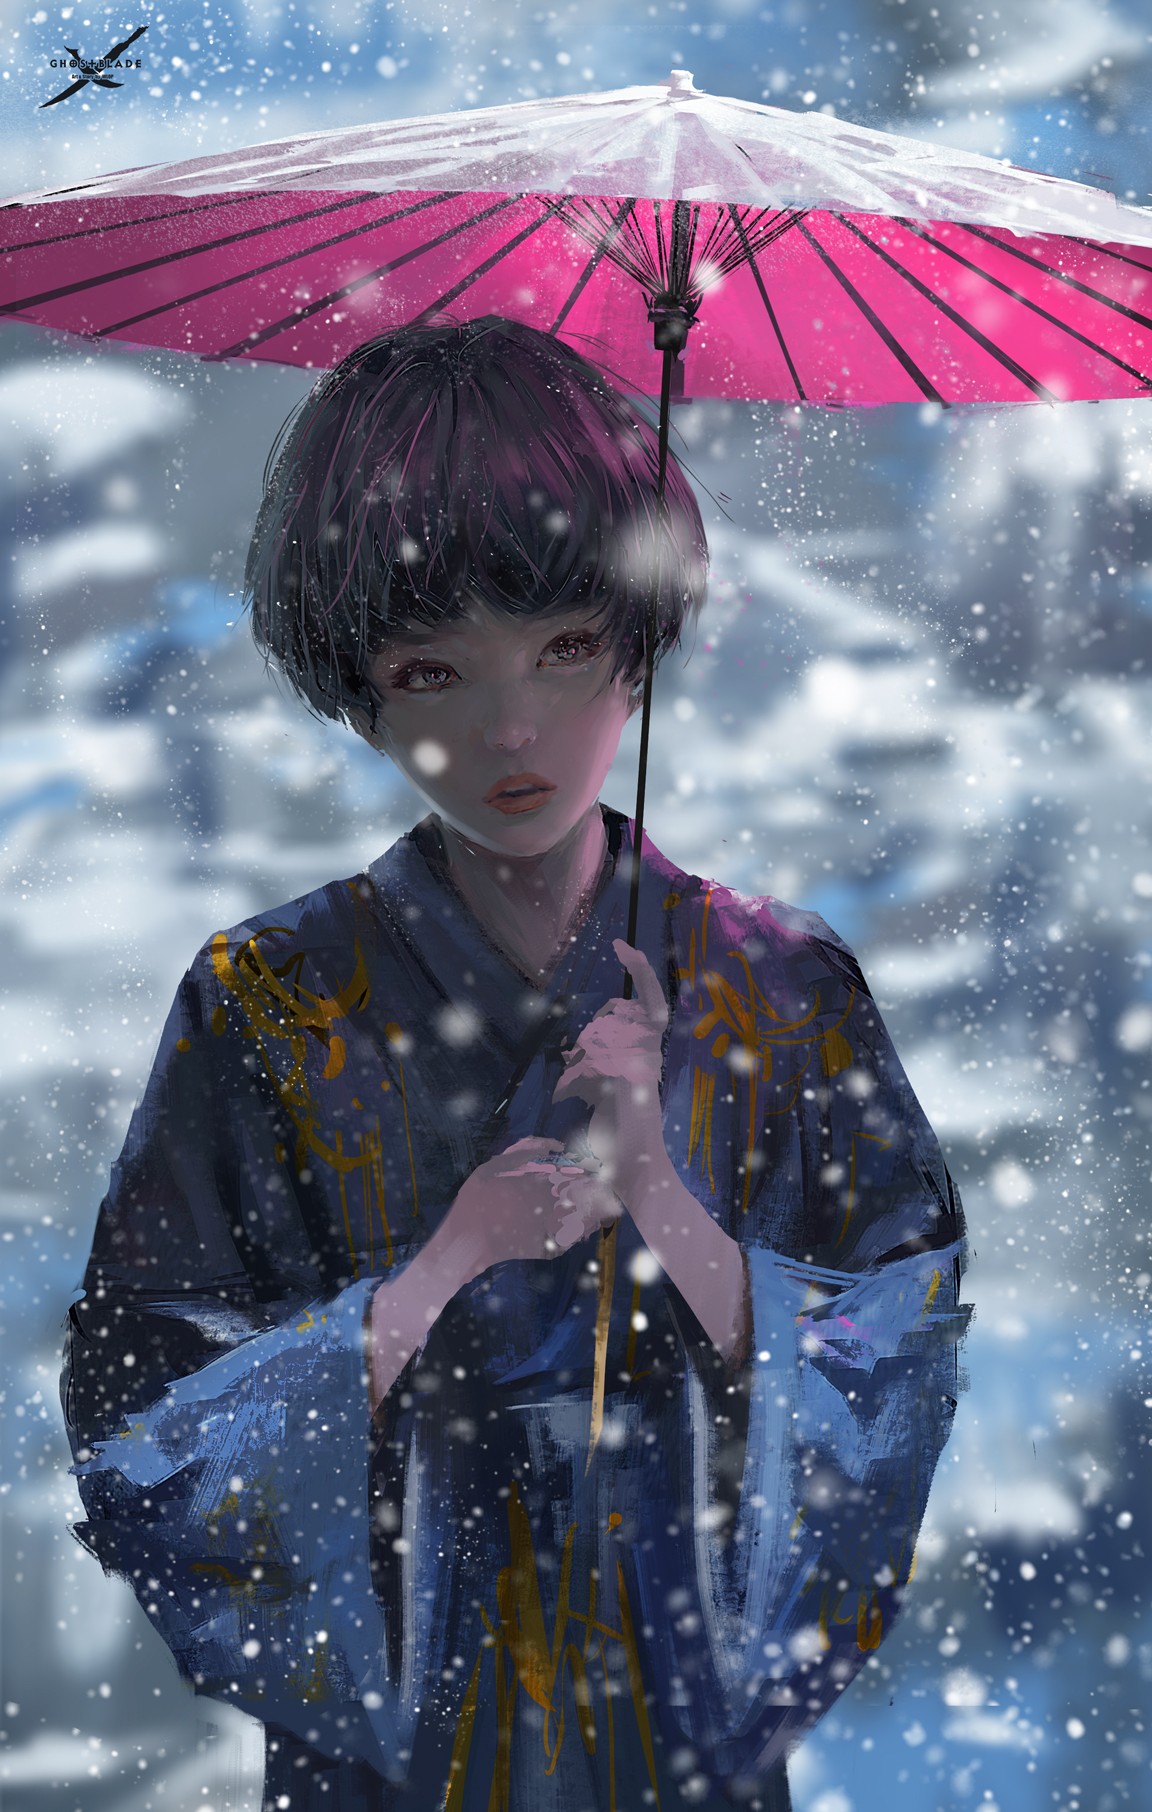 Anime 1152x1812 WLOP fantasy art anime girls snow umbrella anime Ghostblade women women with umbrella artwork Pixiv